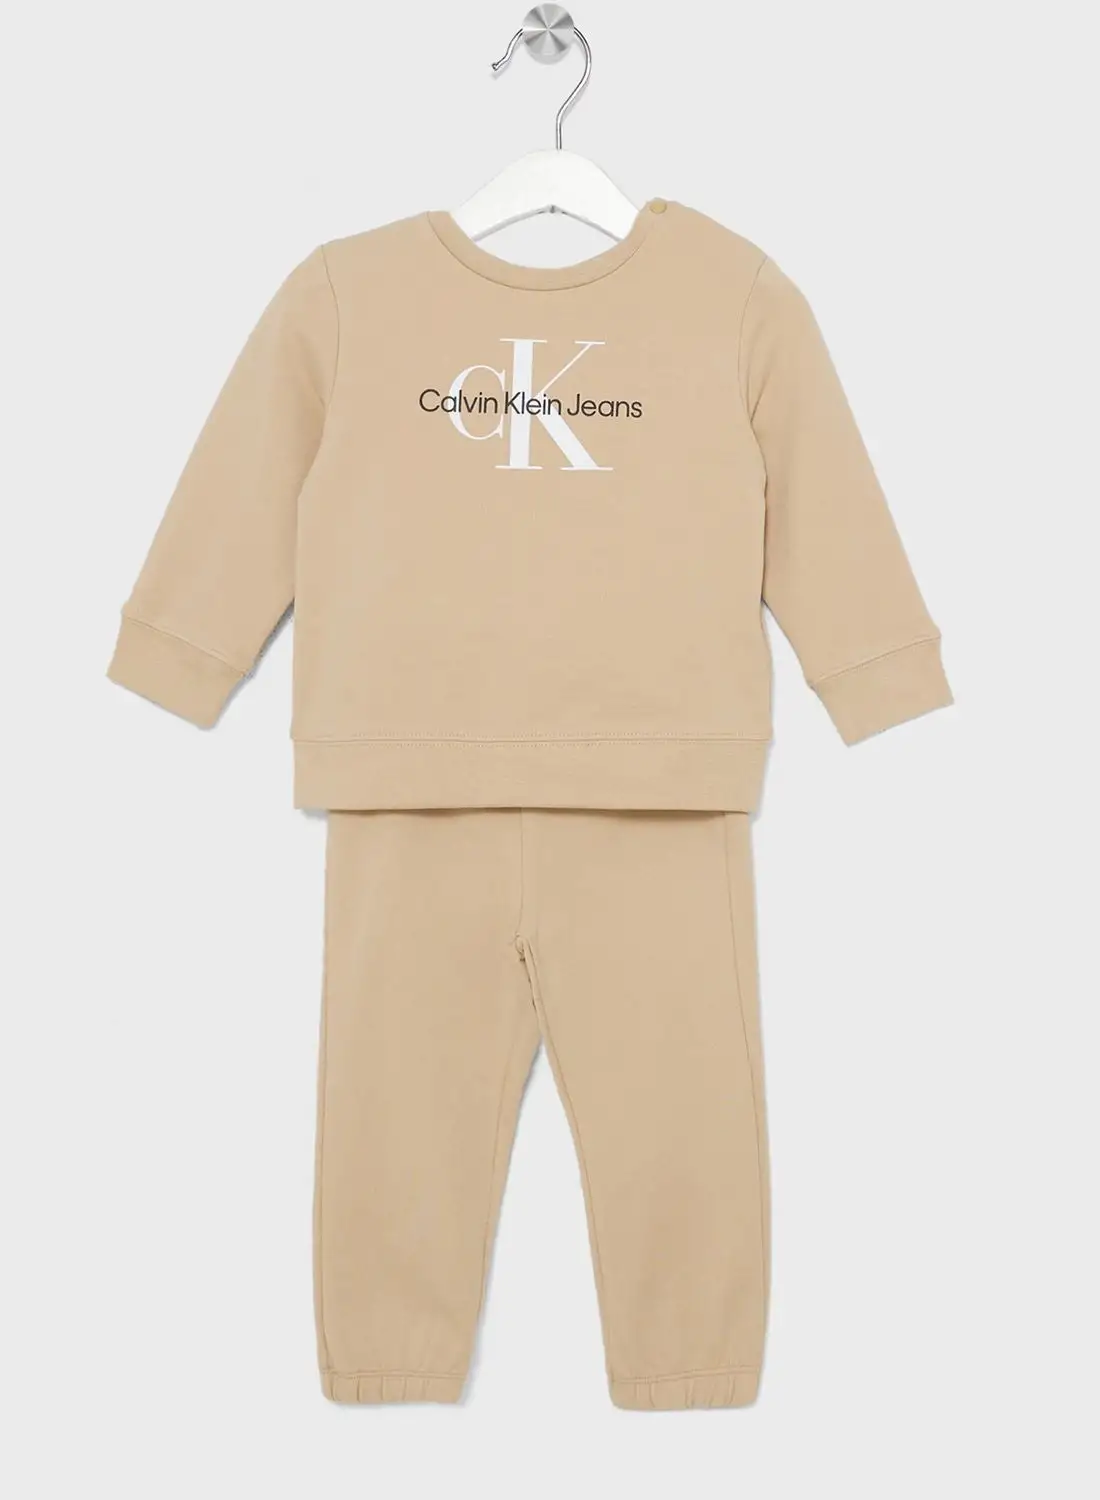 Calvin Klein Jeans Infant Monogram Gift Set